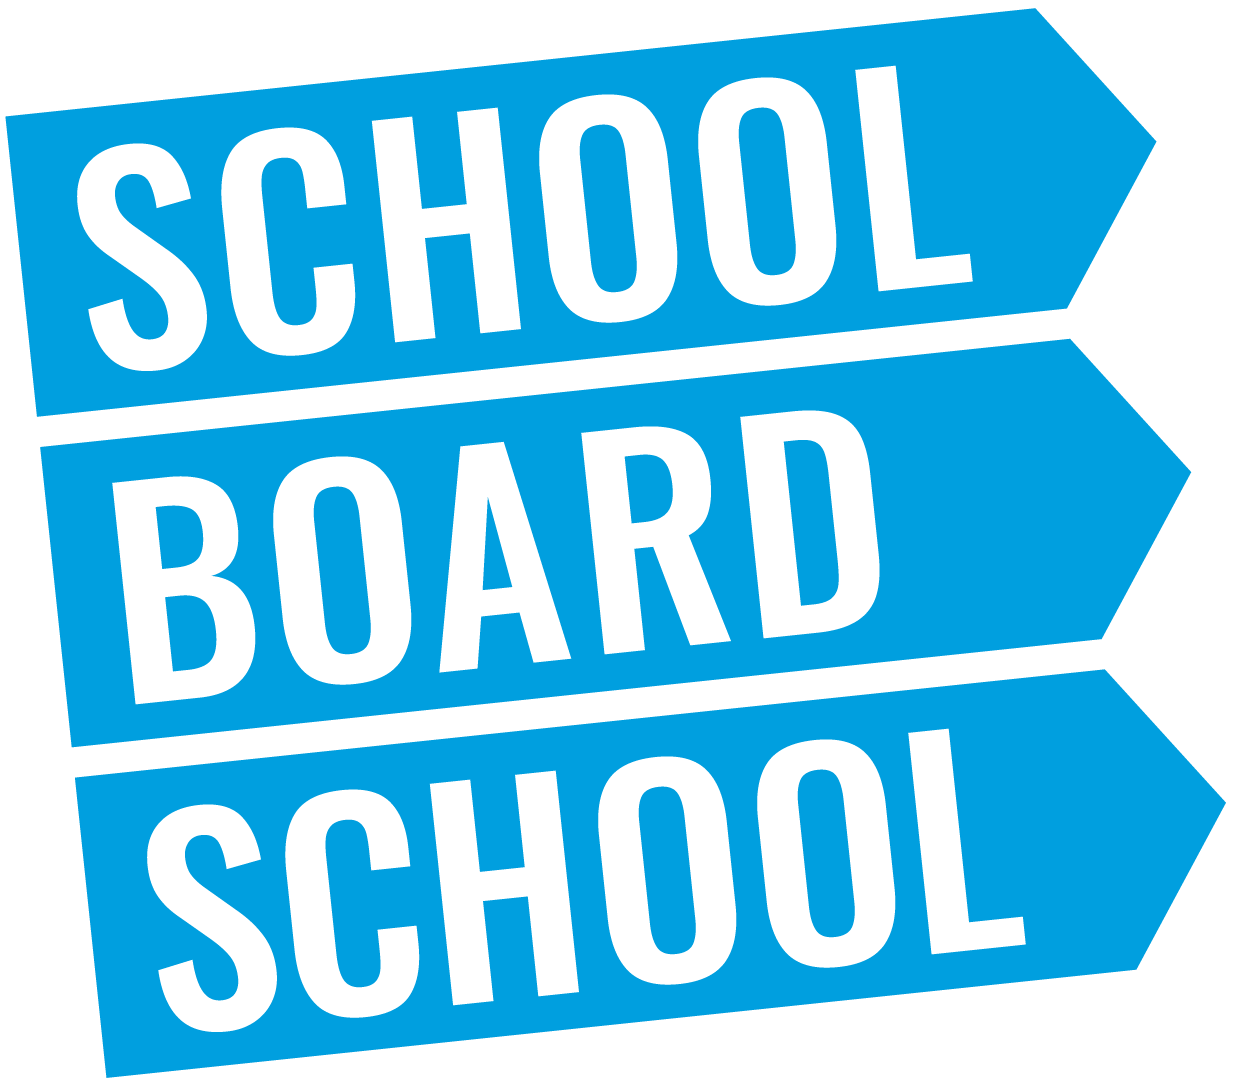 School Board School logo